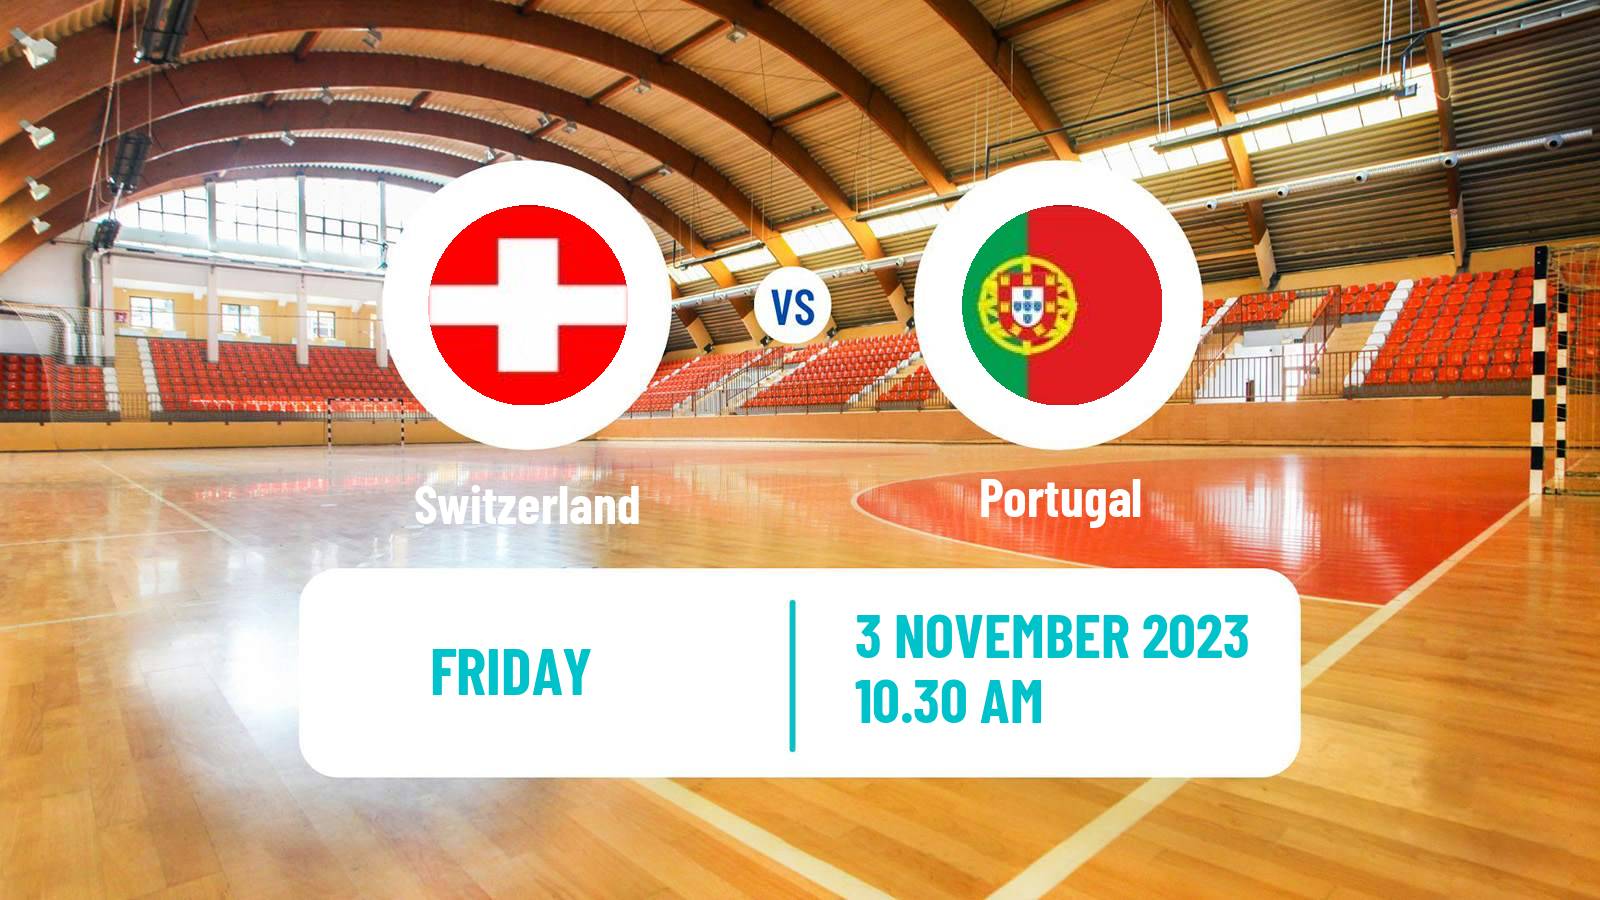 Handball Friendly International Handball Switzerland - Portugal